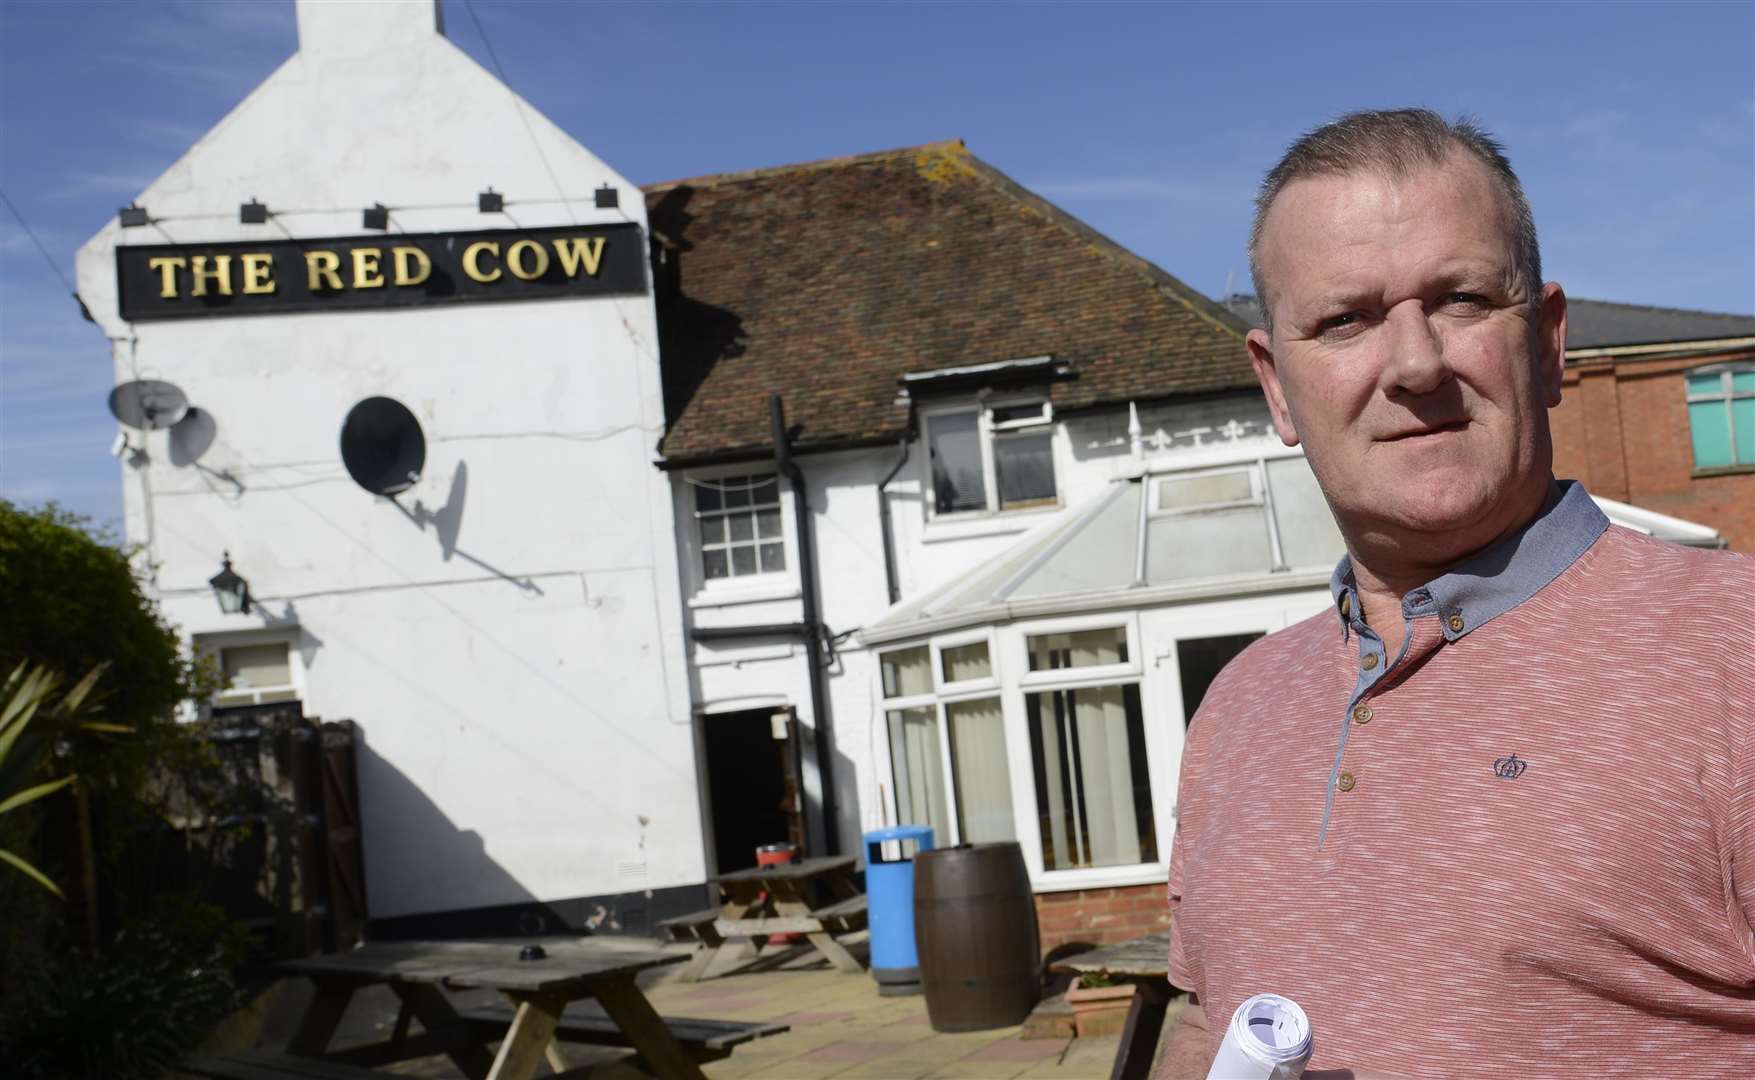 Joe Daniels was shot dead inside his Red Cow pub in November